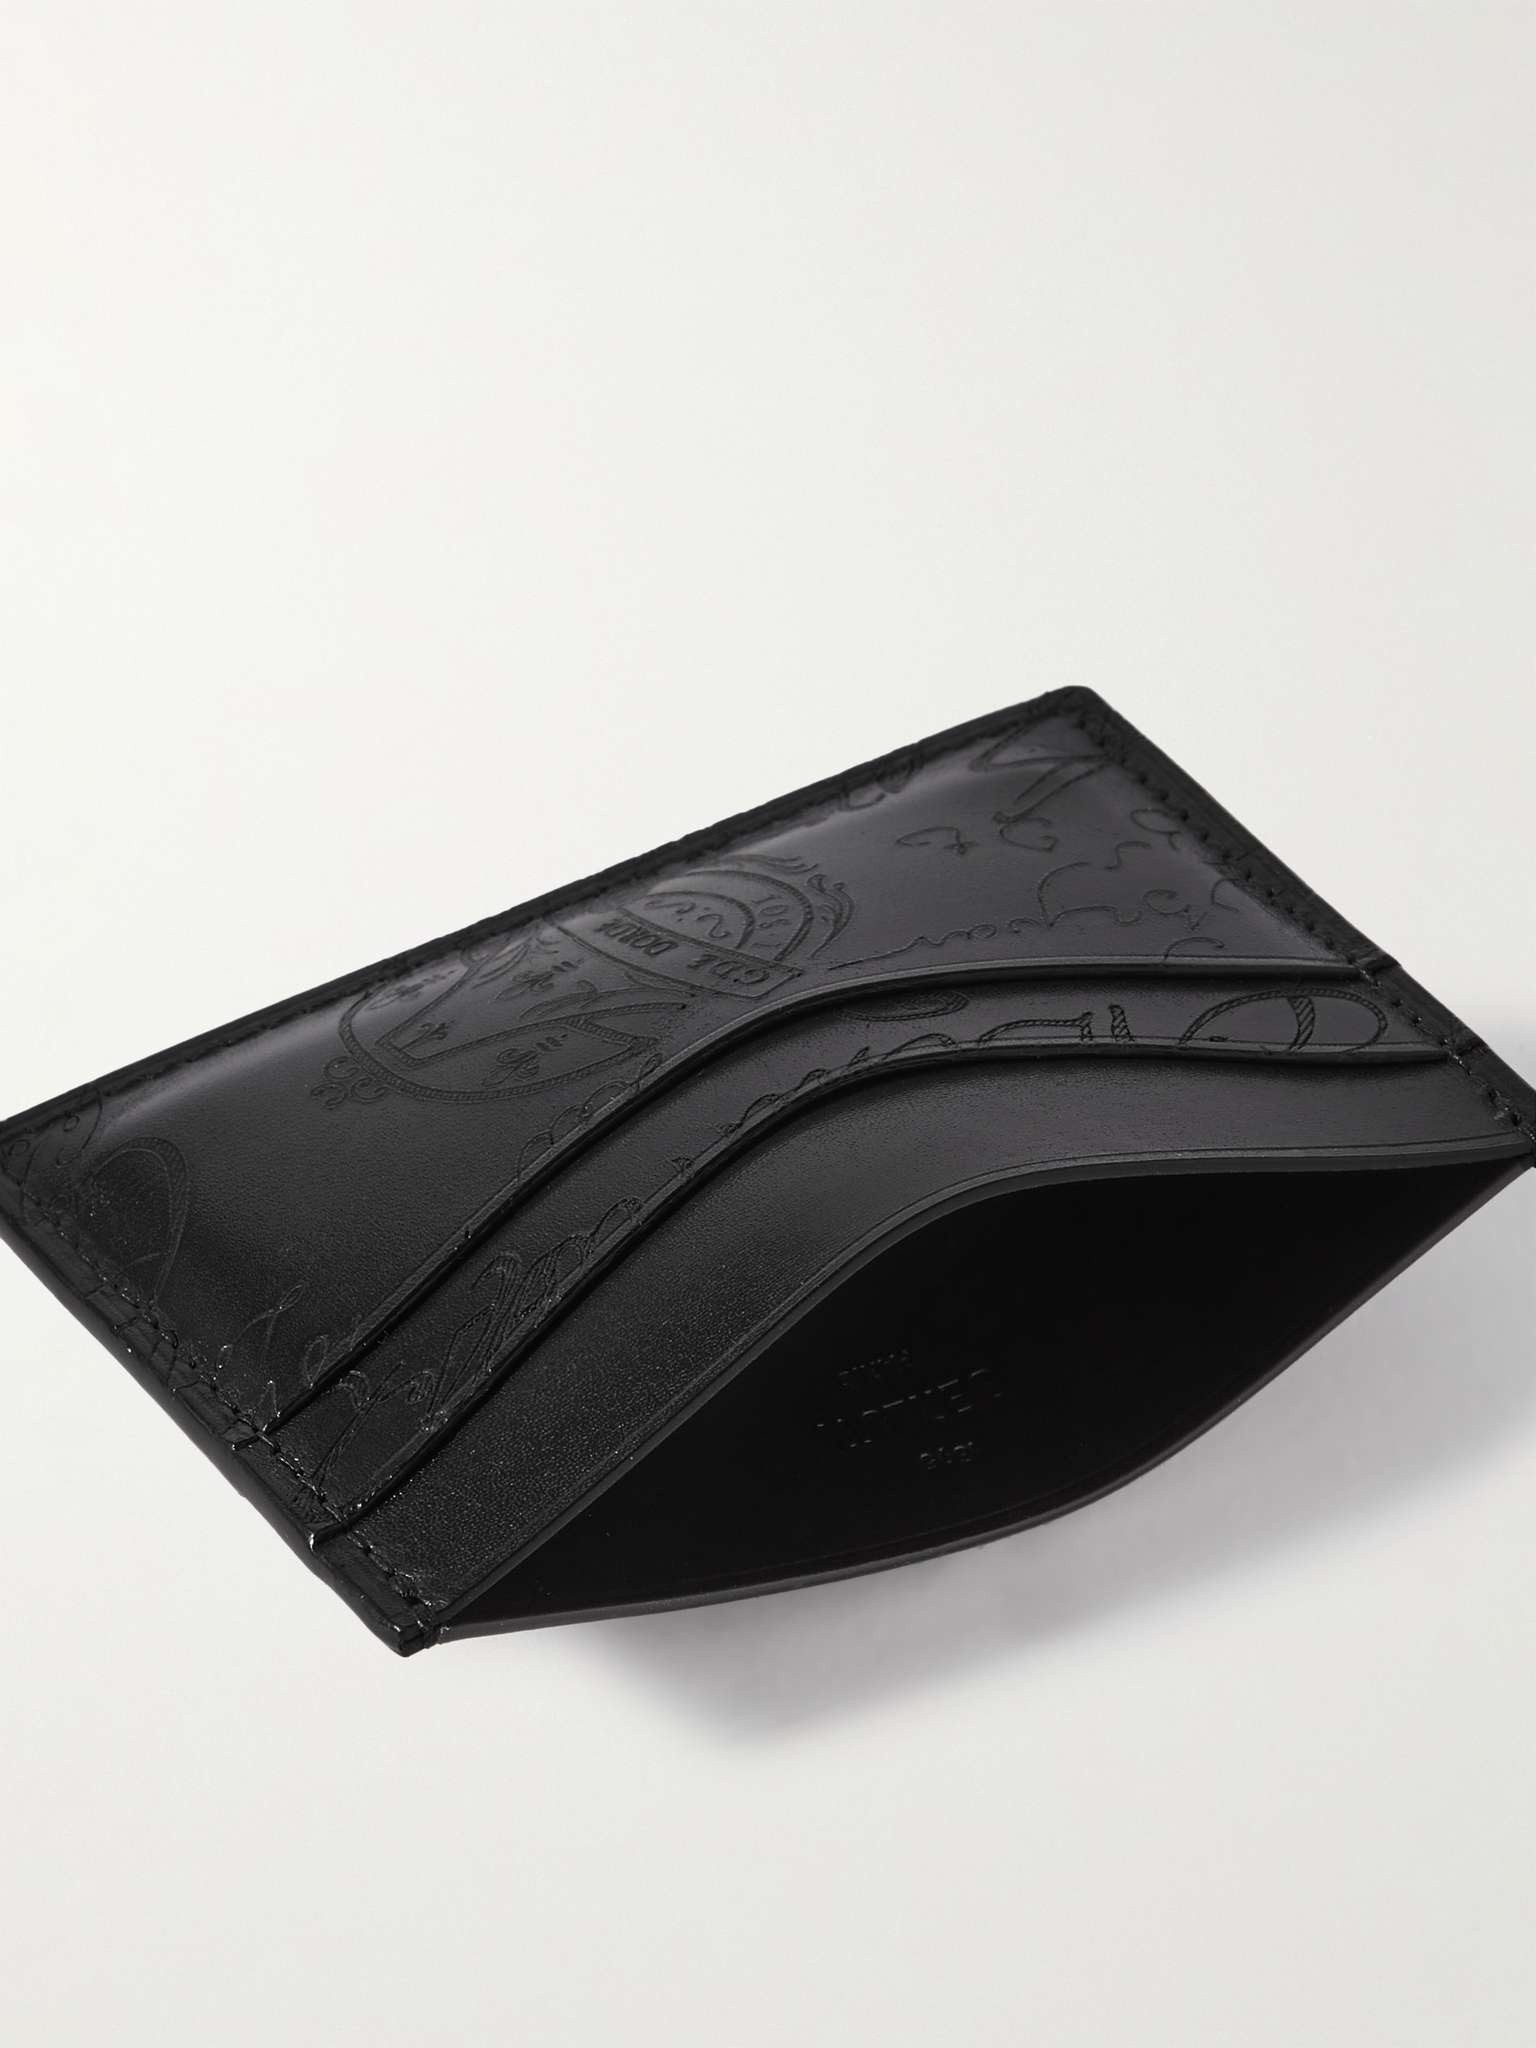 Bambou Scritto Venezia Leather Cardholder - 2